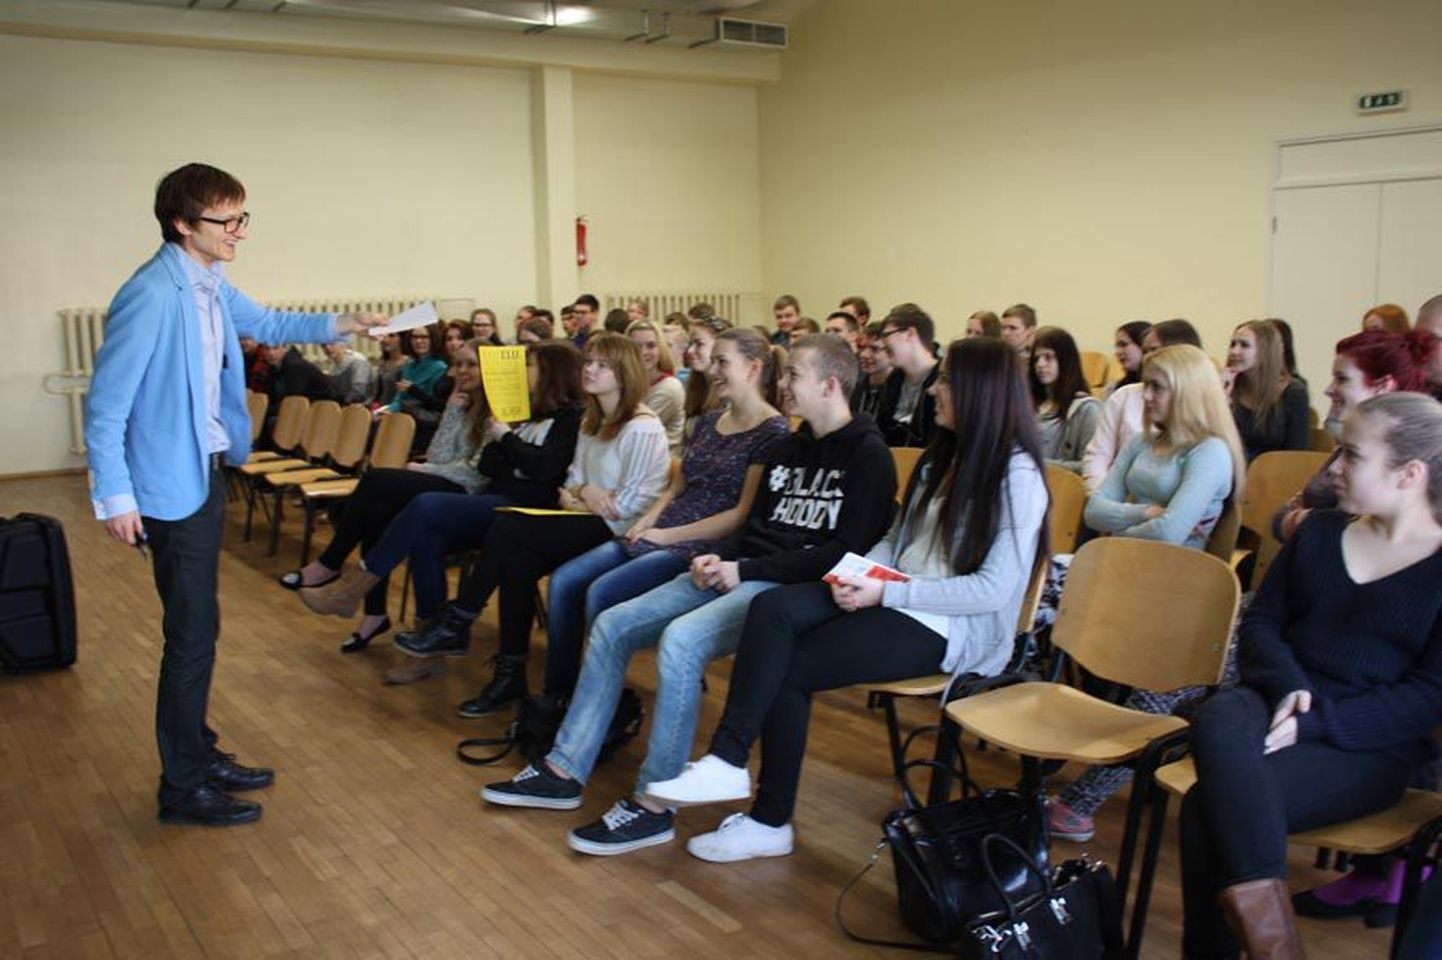 Koolitaja Harald Lepisk pidas Türi ühisgümnaasiumi avatud uste päeval tulevastele gümnasistidele inspireeriva loengu teemal «Tee seda, mida armastad ja tee seda tihti!».